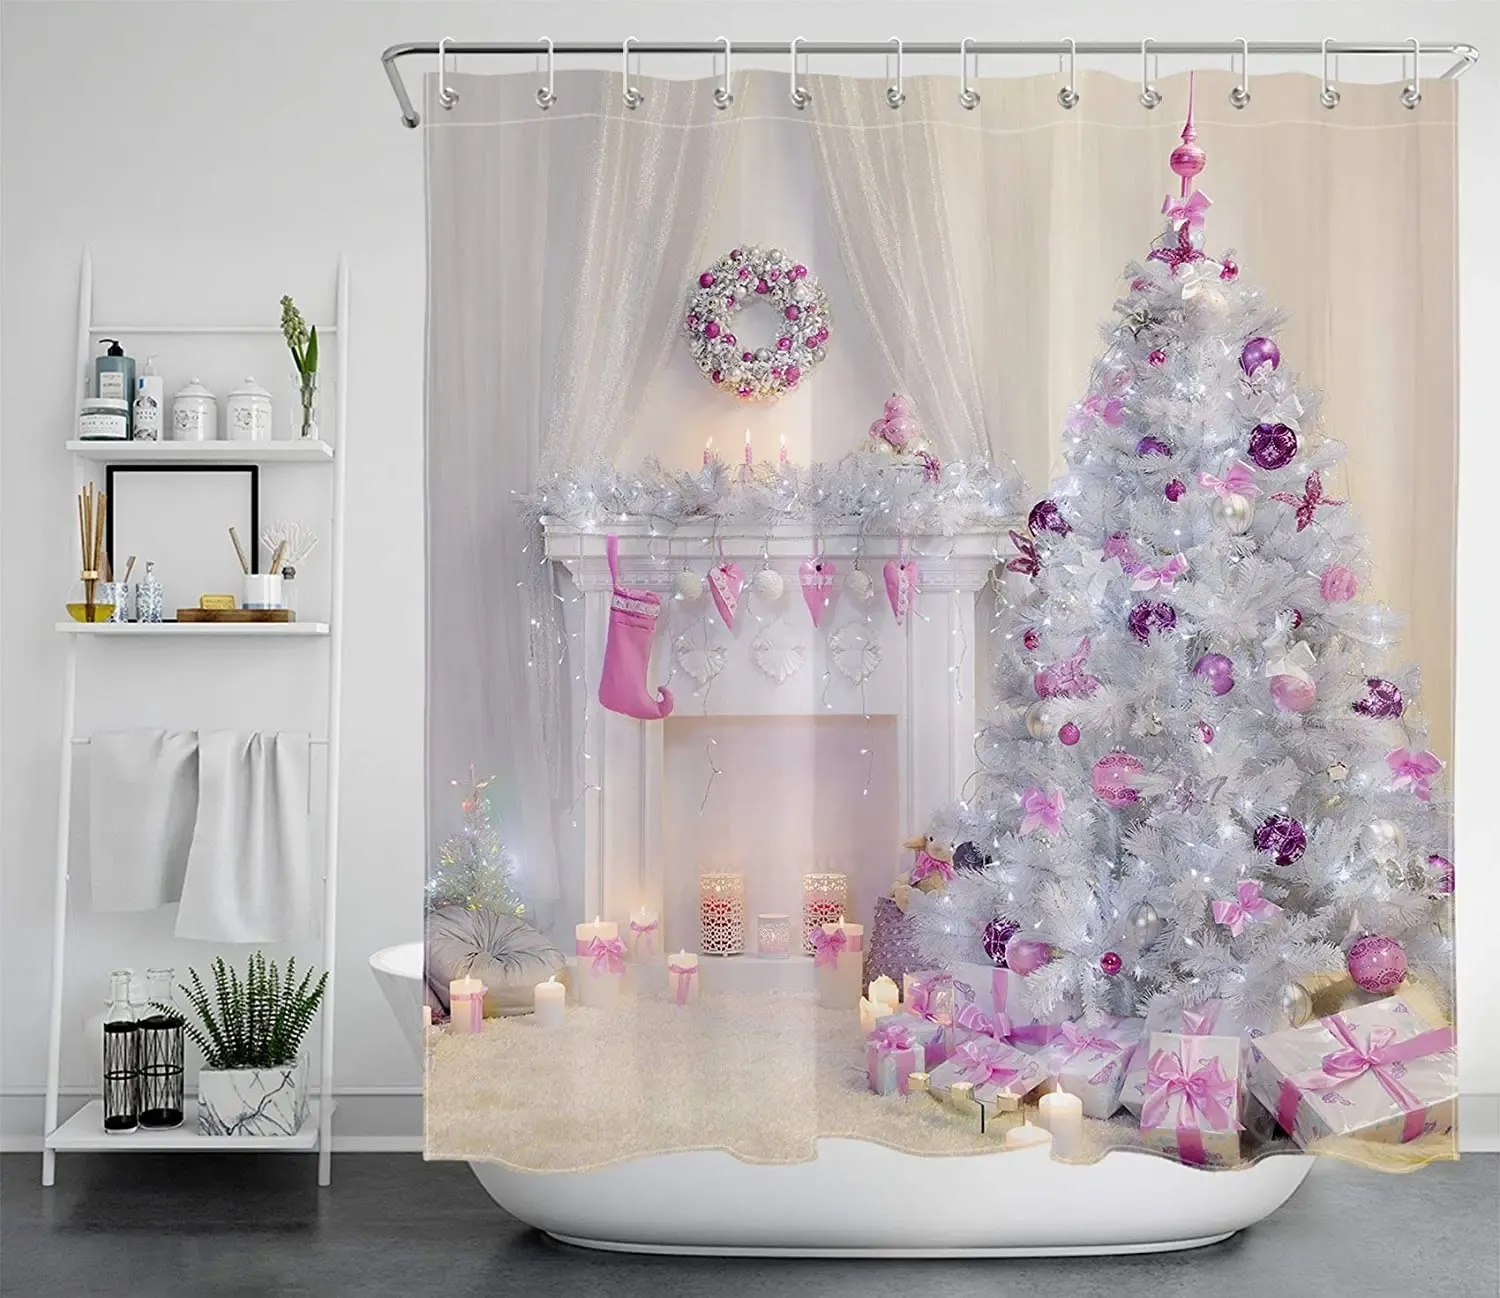 Vorhänge, Weihnachtsbäume, Duschvorhänge, bedeckt mit rosa Weihnachtskugeln, Geschenken, Kaminkerzen, Winter, Zuhause, Badezimmer, Vorhangdekoration mit Haken